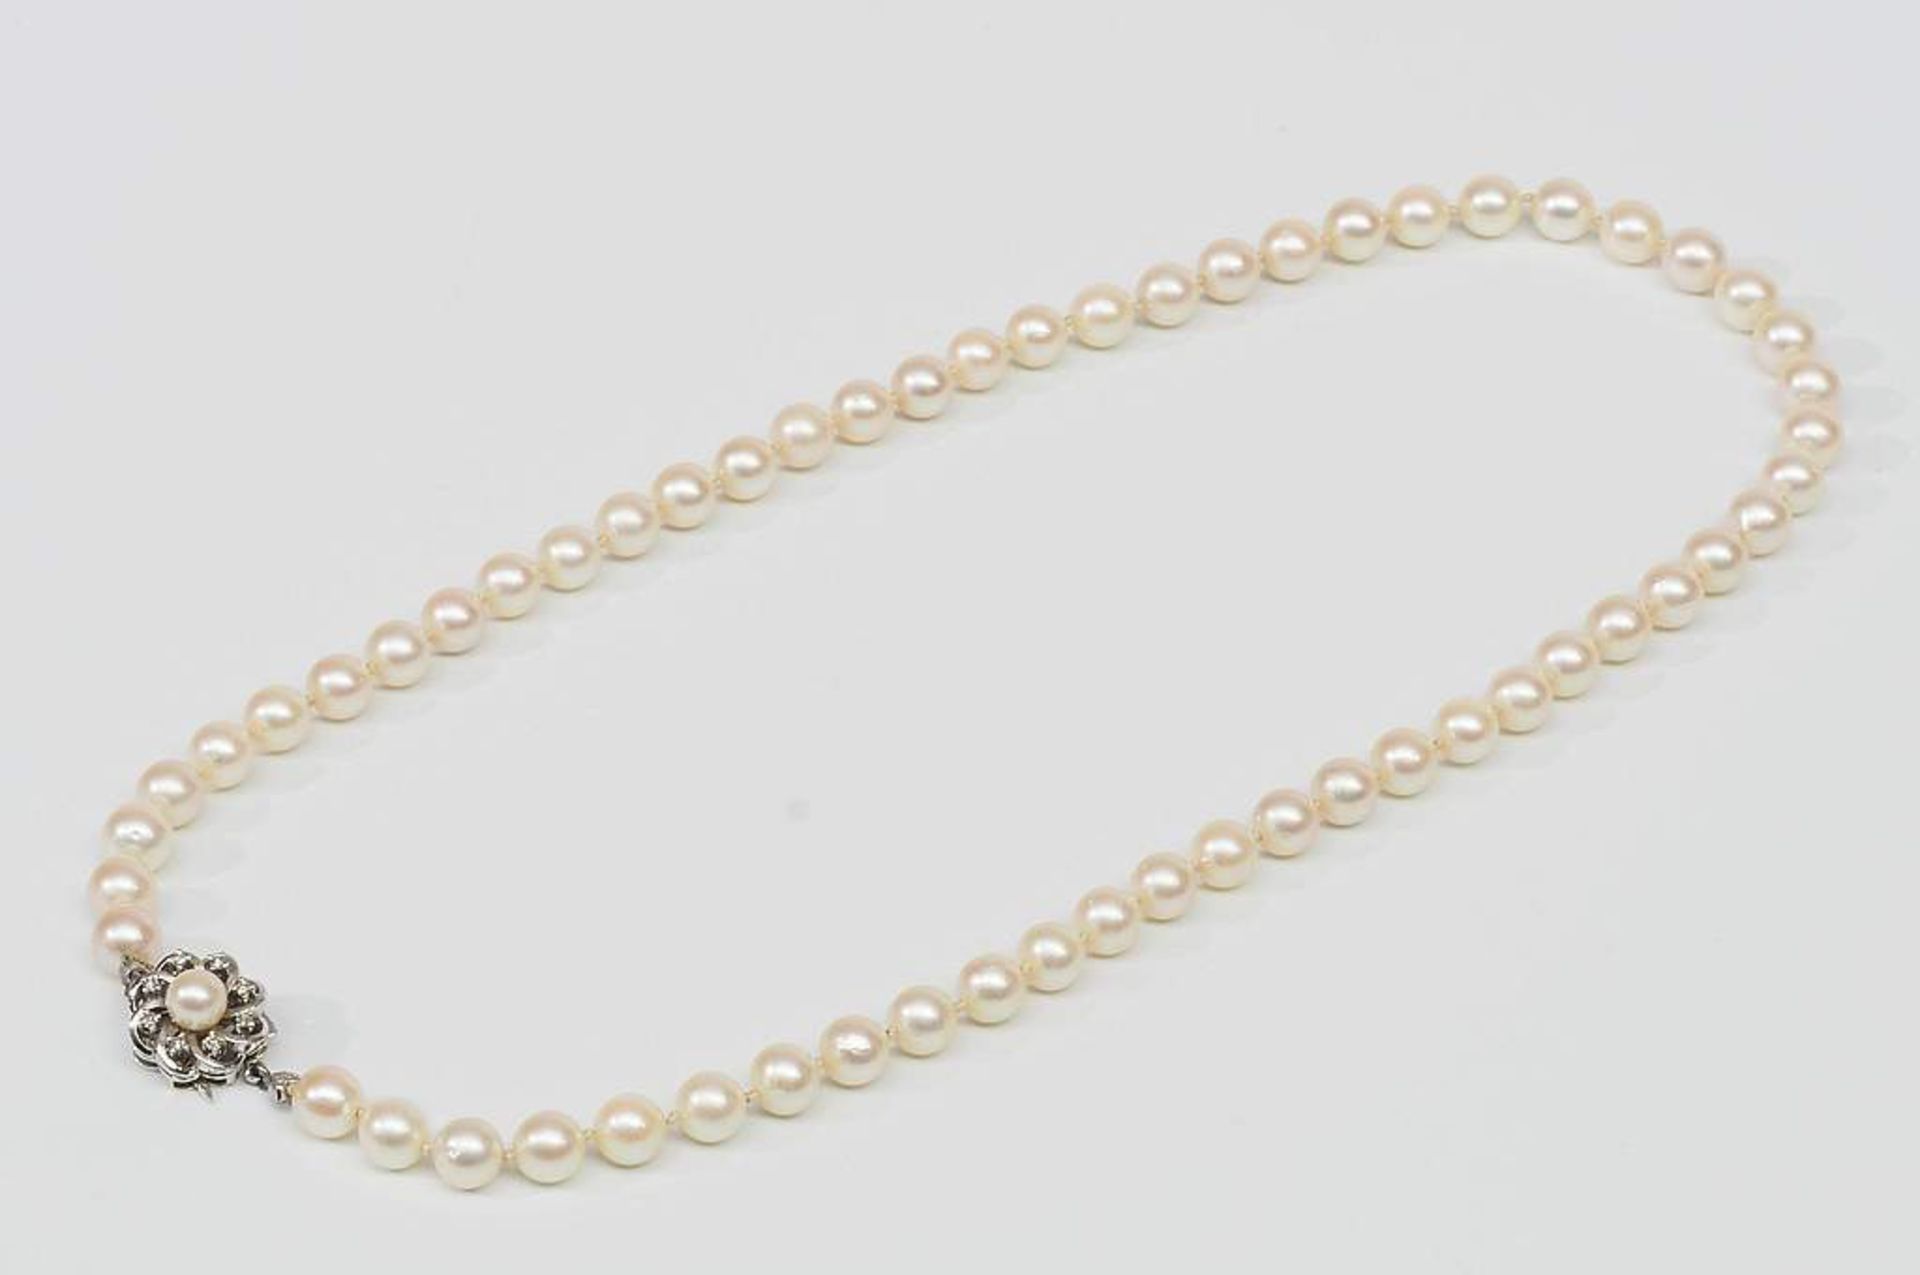 Weiße Akoya Perlenkette mit Schmuckschließe. 585er Weißgold, kranzförmig besetzt mit kleinen Br - Bild 4 aus 7